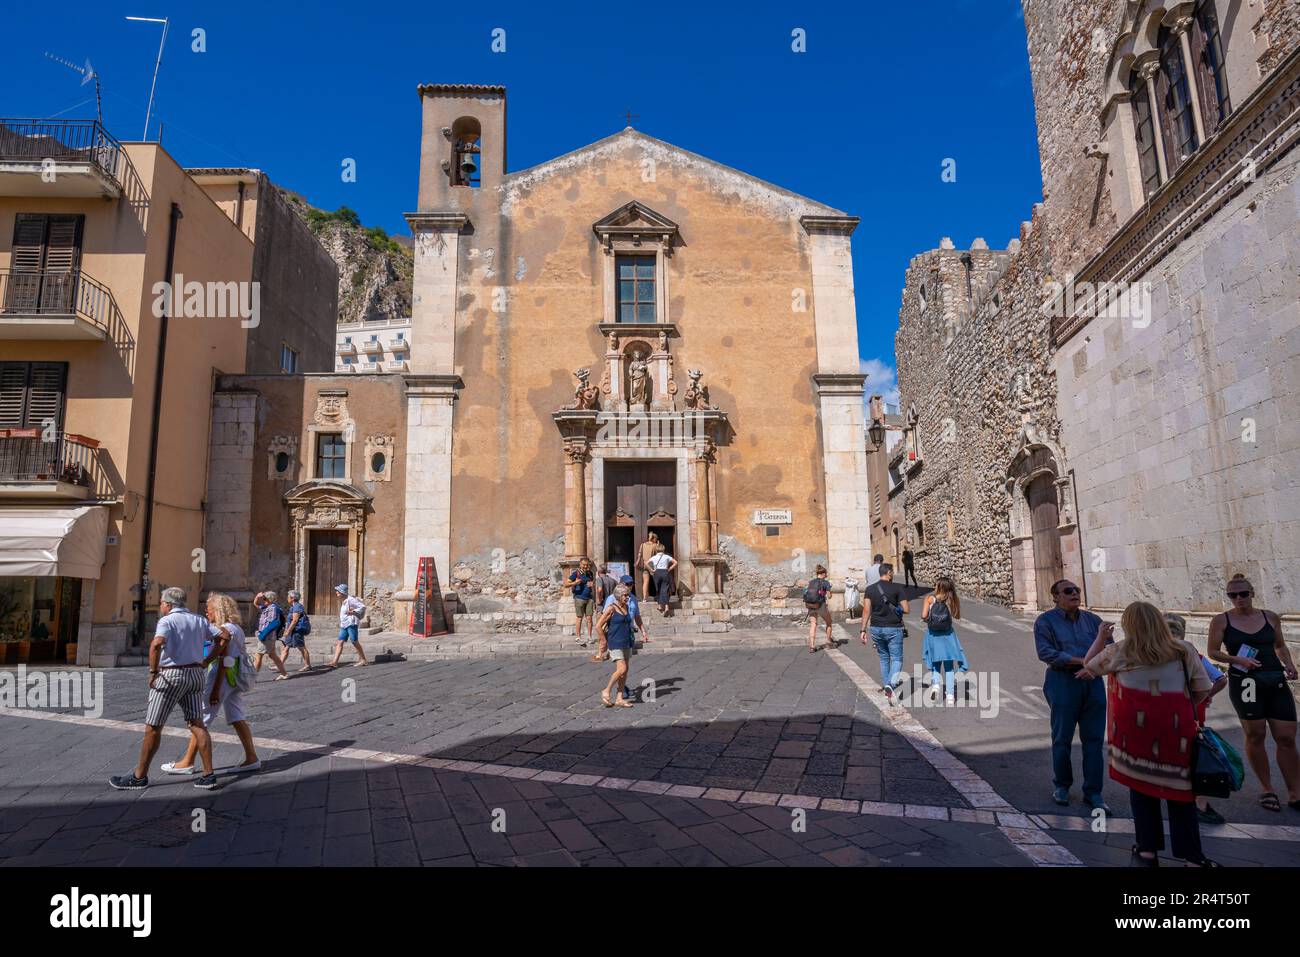 Vue de l'église Sainte Catherine d'Alexandrie sur la Piazza Vittorio Emanuele II à Taormina, Taormina, Sicile, Italie, Europe Banque D'Images